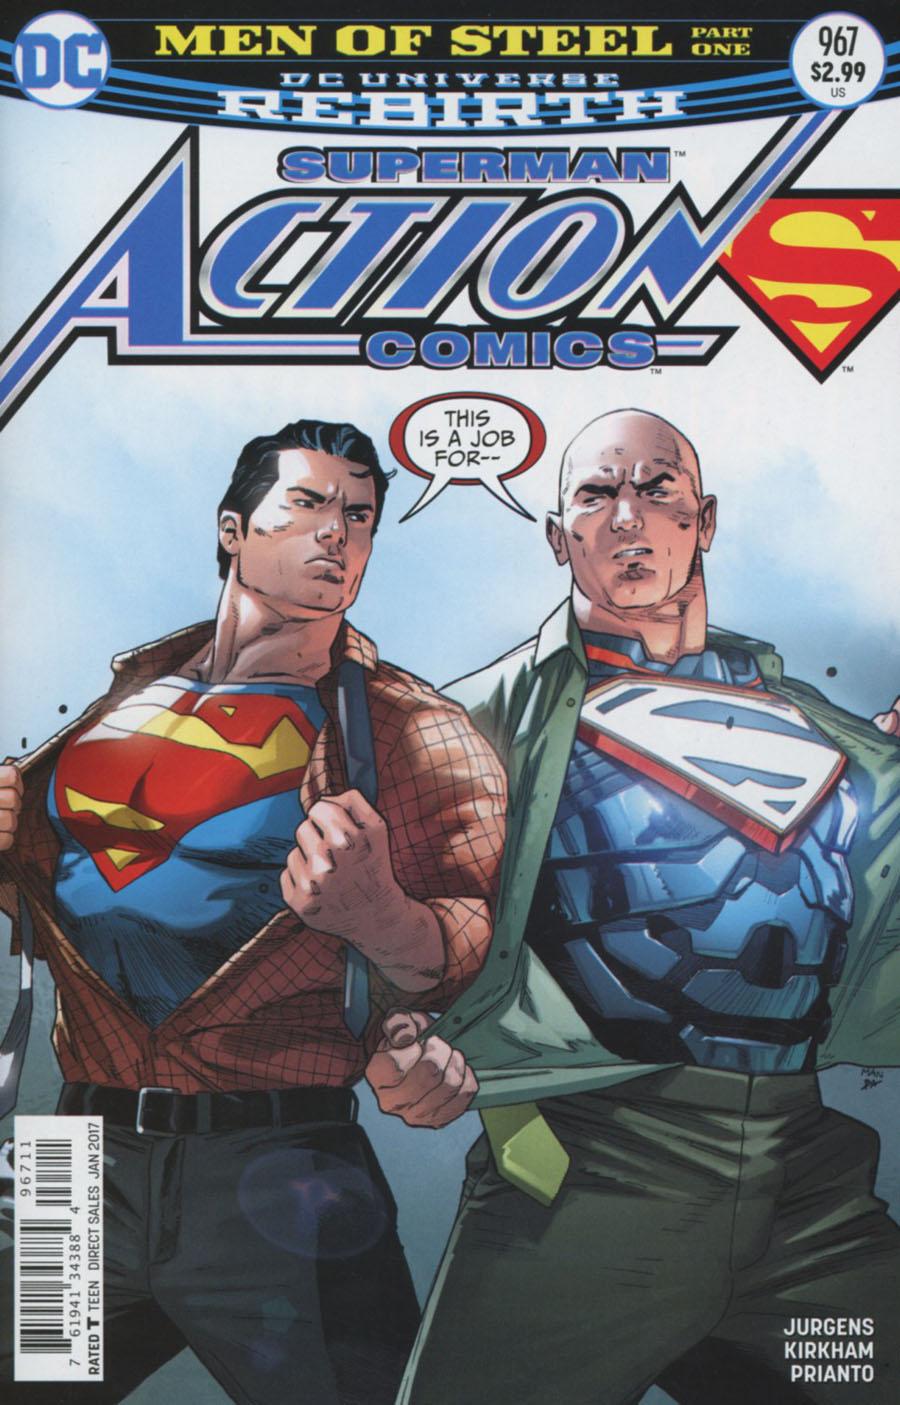 Action Comics Vol. 2 #967